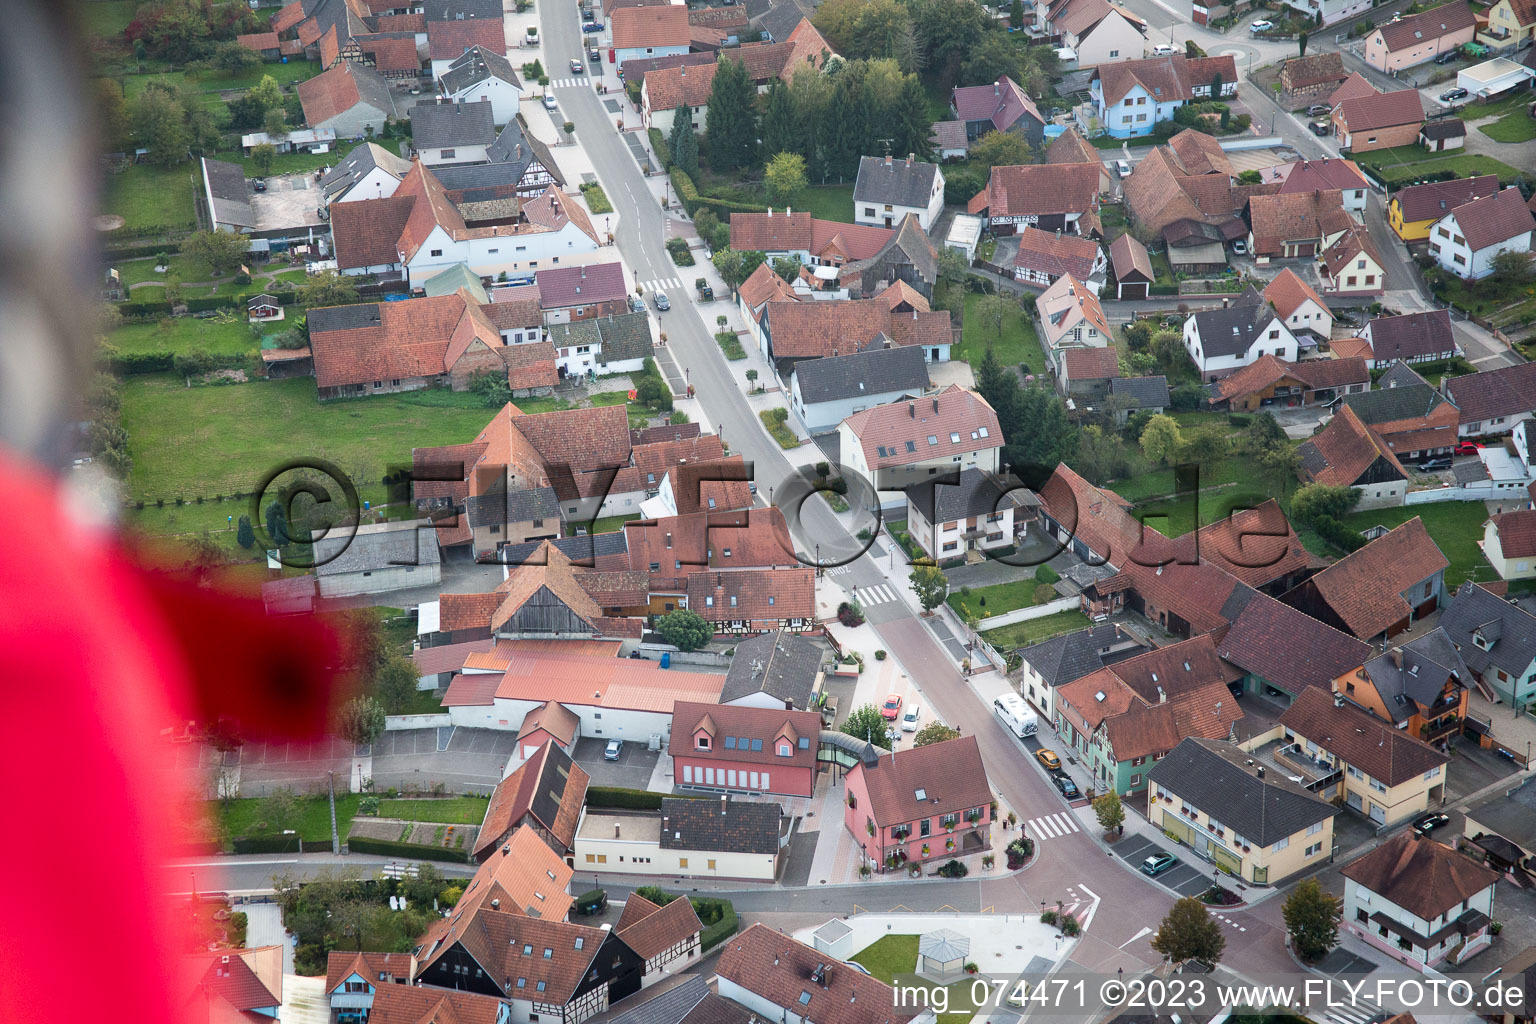 Beinheim im Bundesland Bas-Rhin, Frankreich aus der Drohnenperspektive